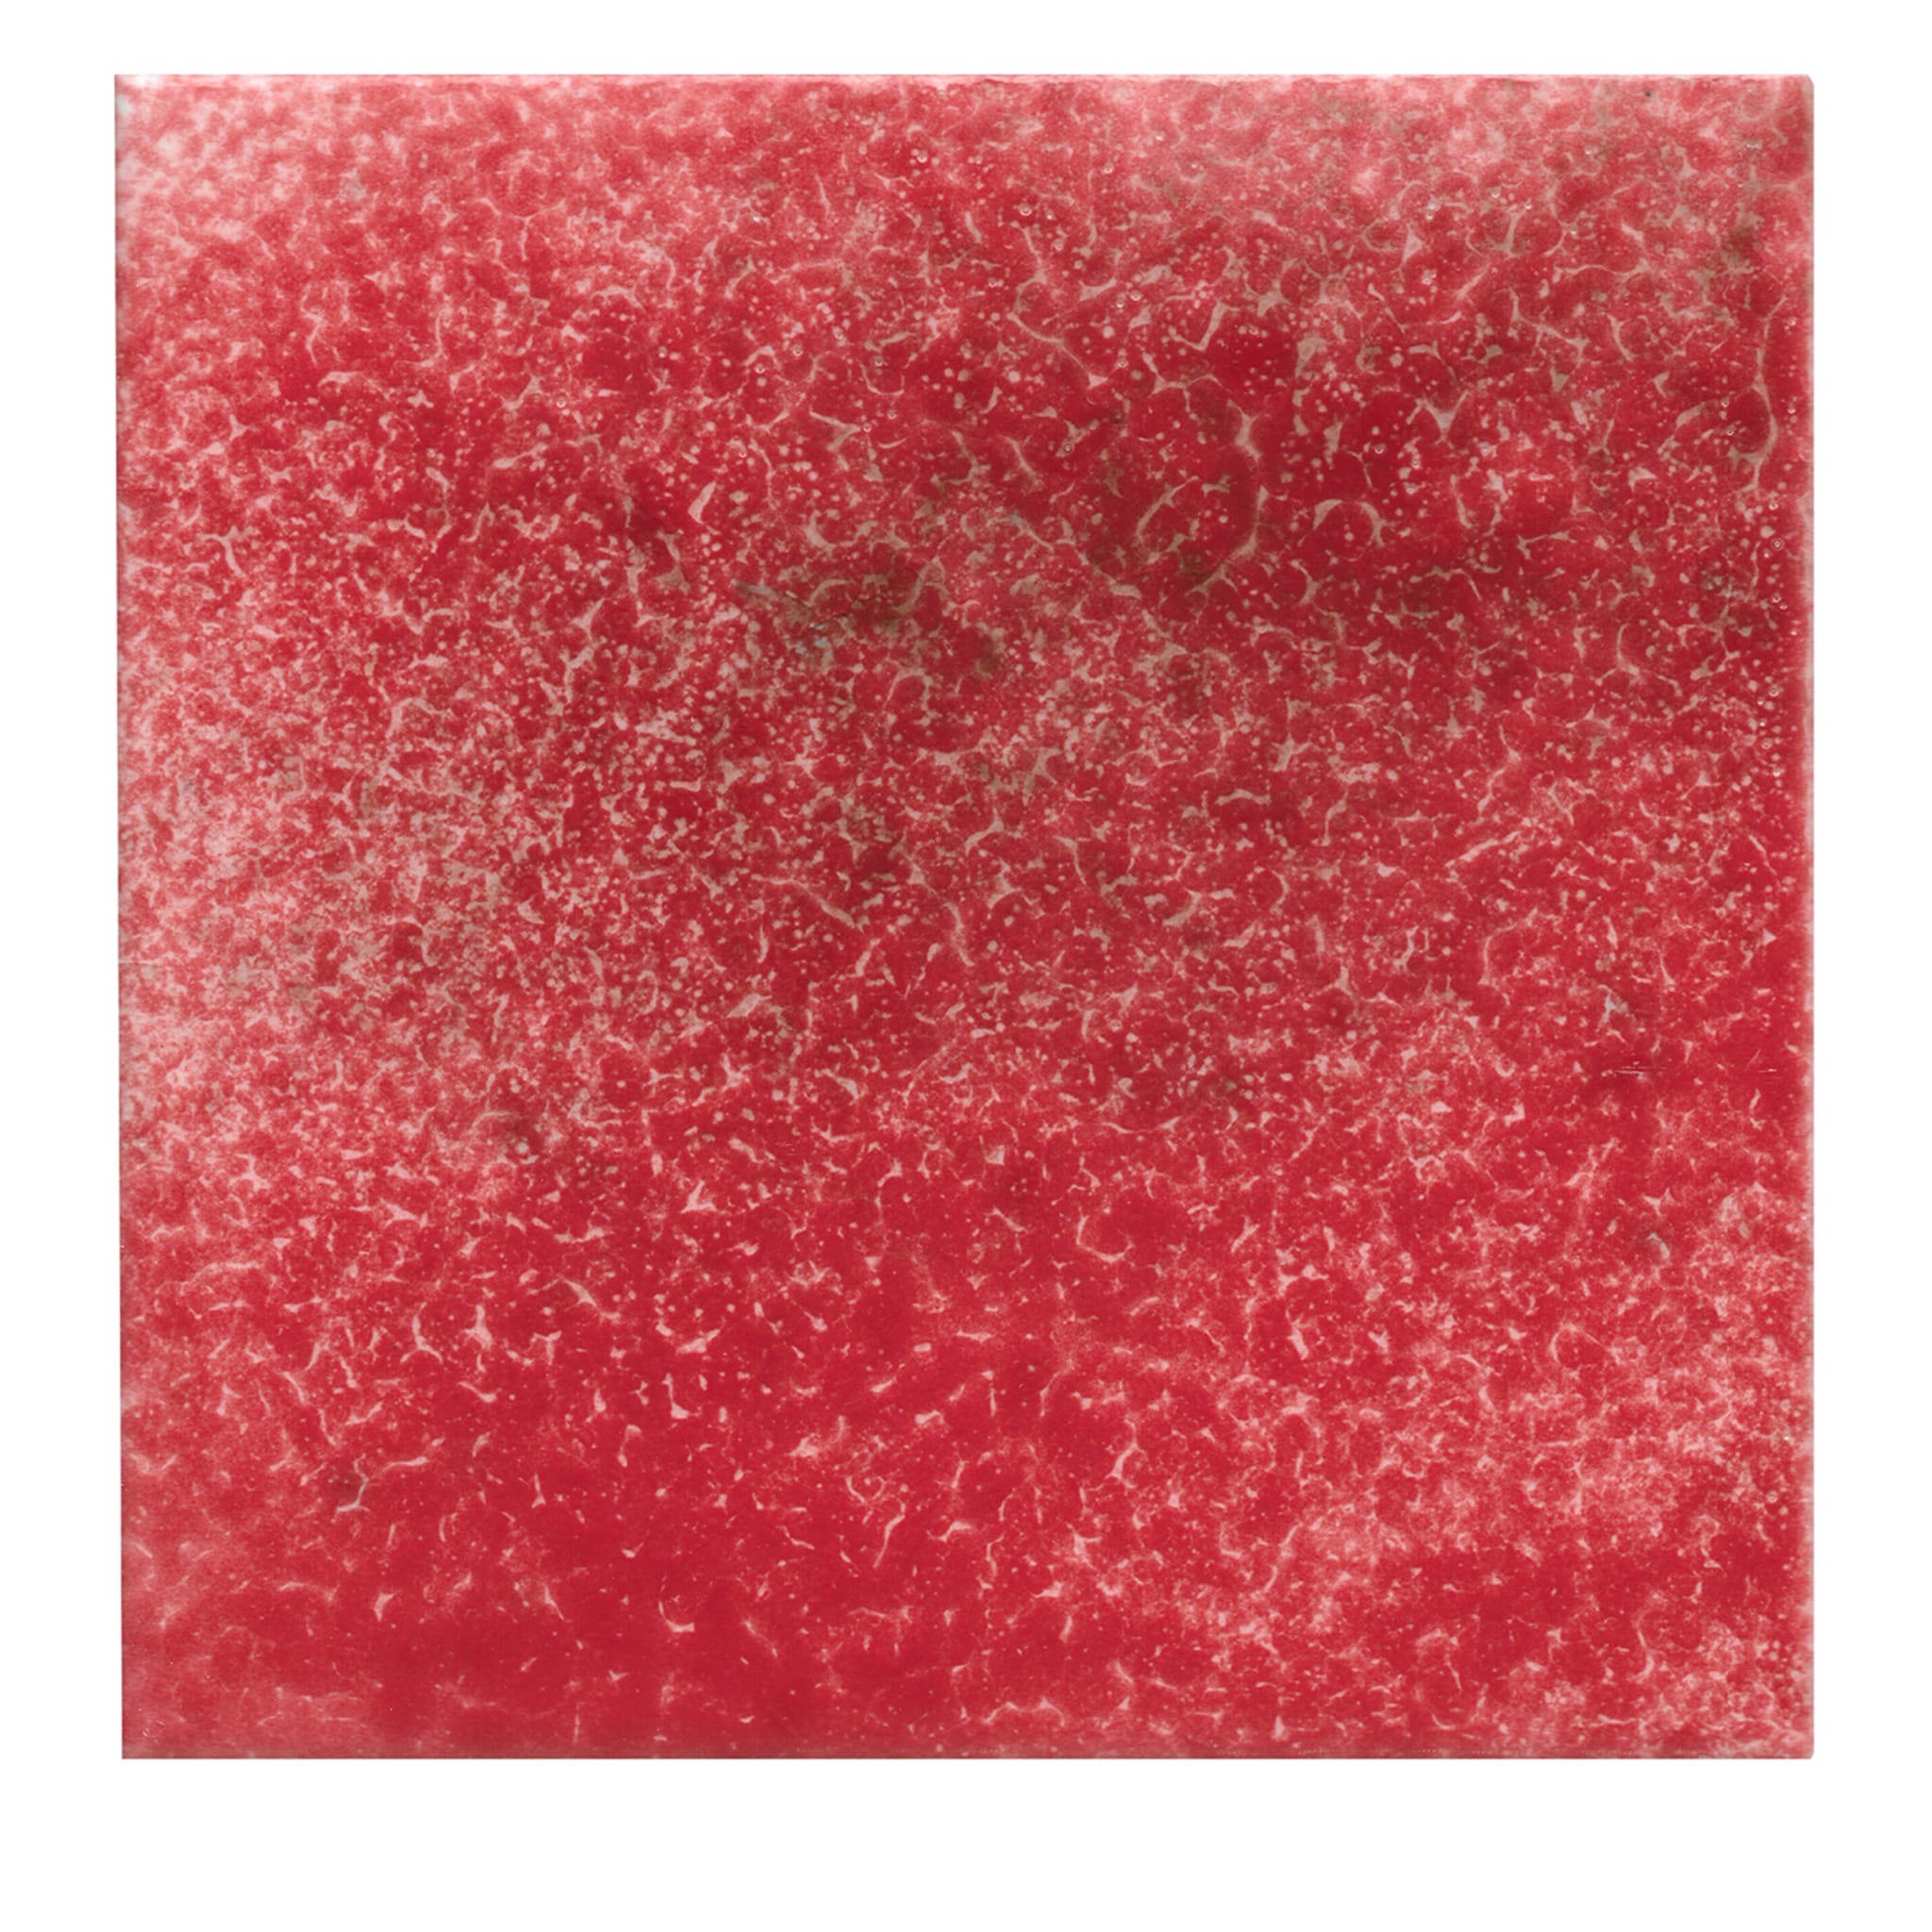 Plein air - Ensemble de 64 carreaux carrés rouges - Vue principale